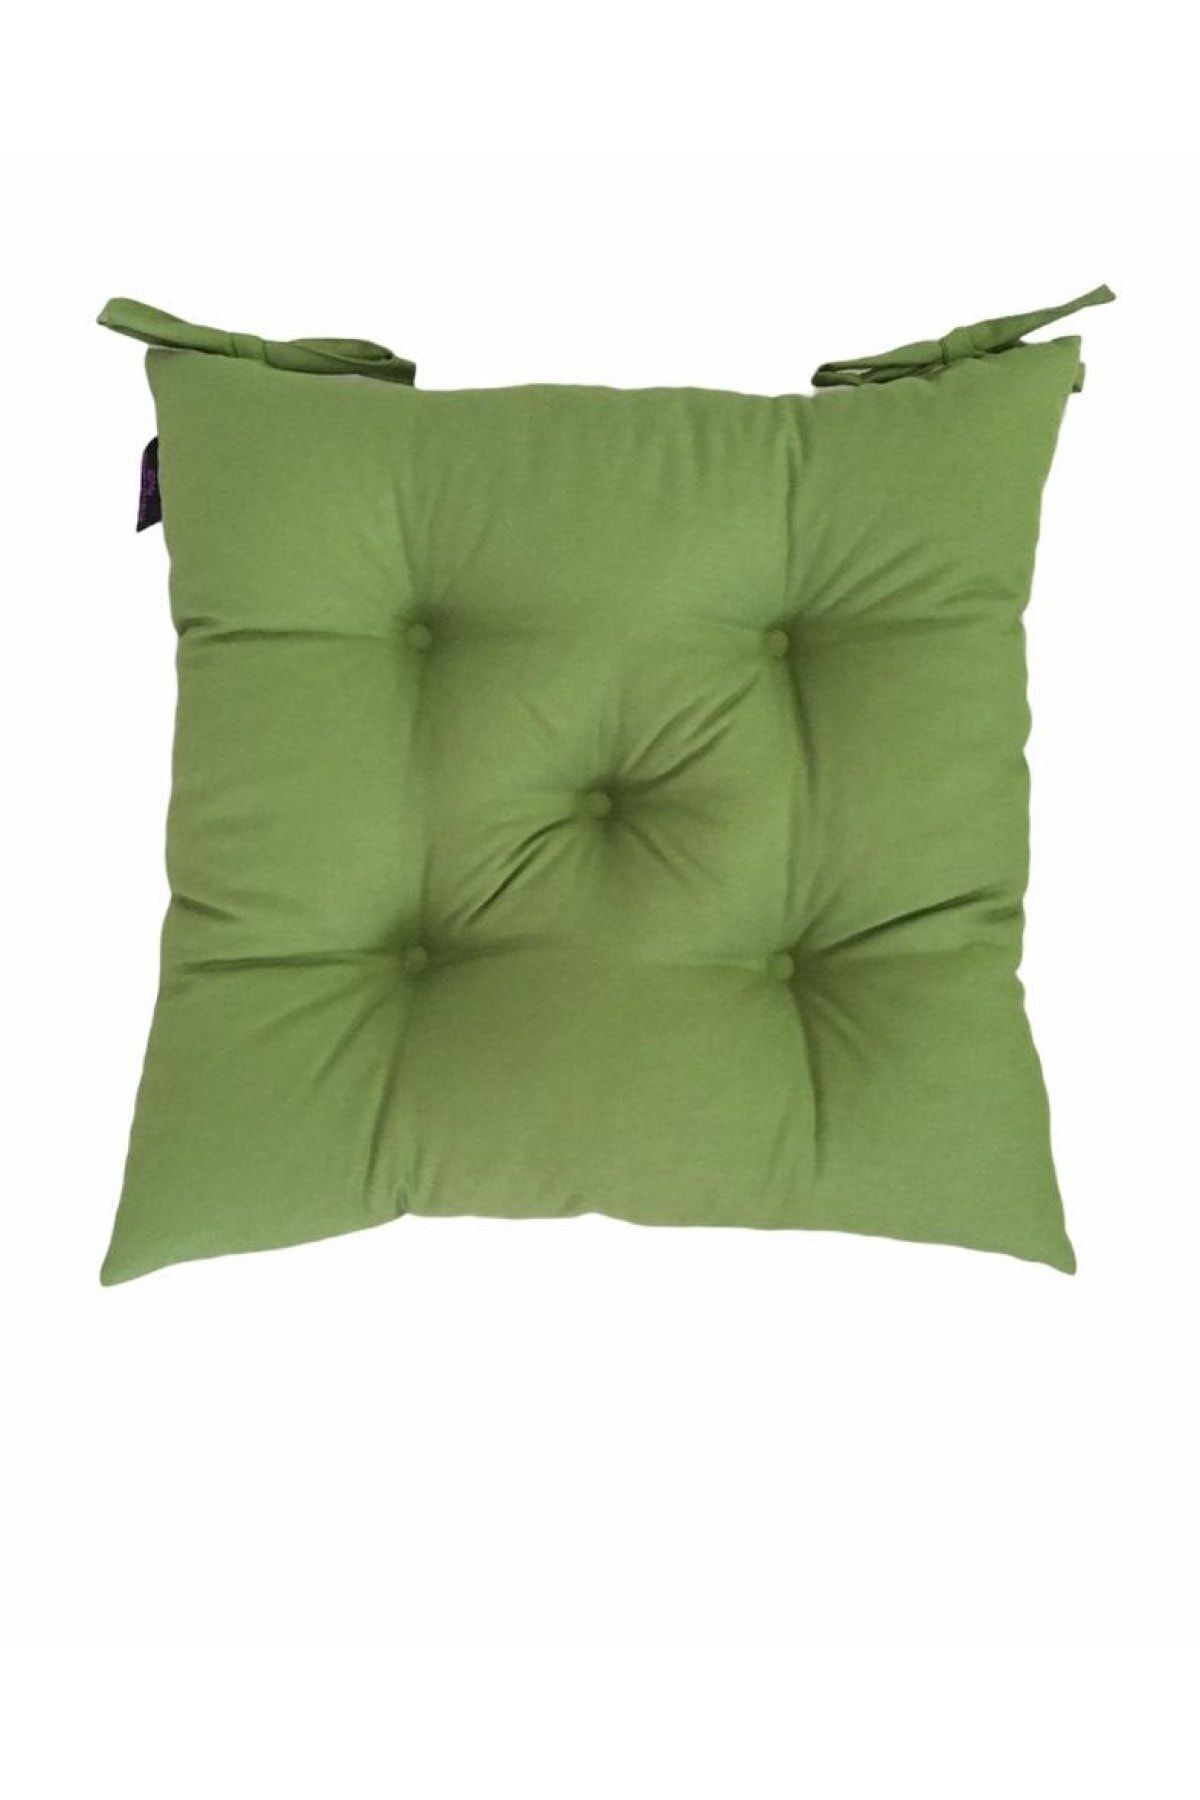 Bykutlay Home Collection Çimen Yeşili Tonu Sandalye Minderi  40*40 cm